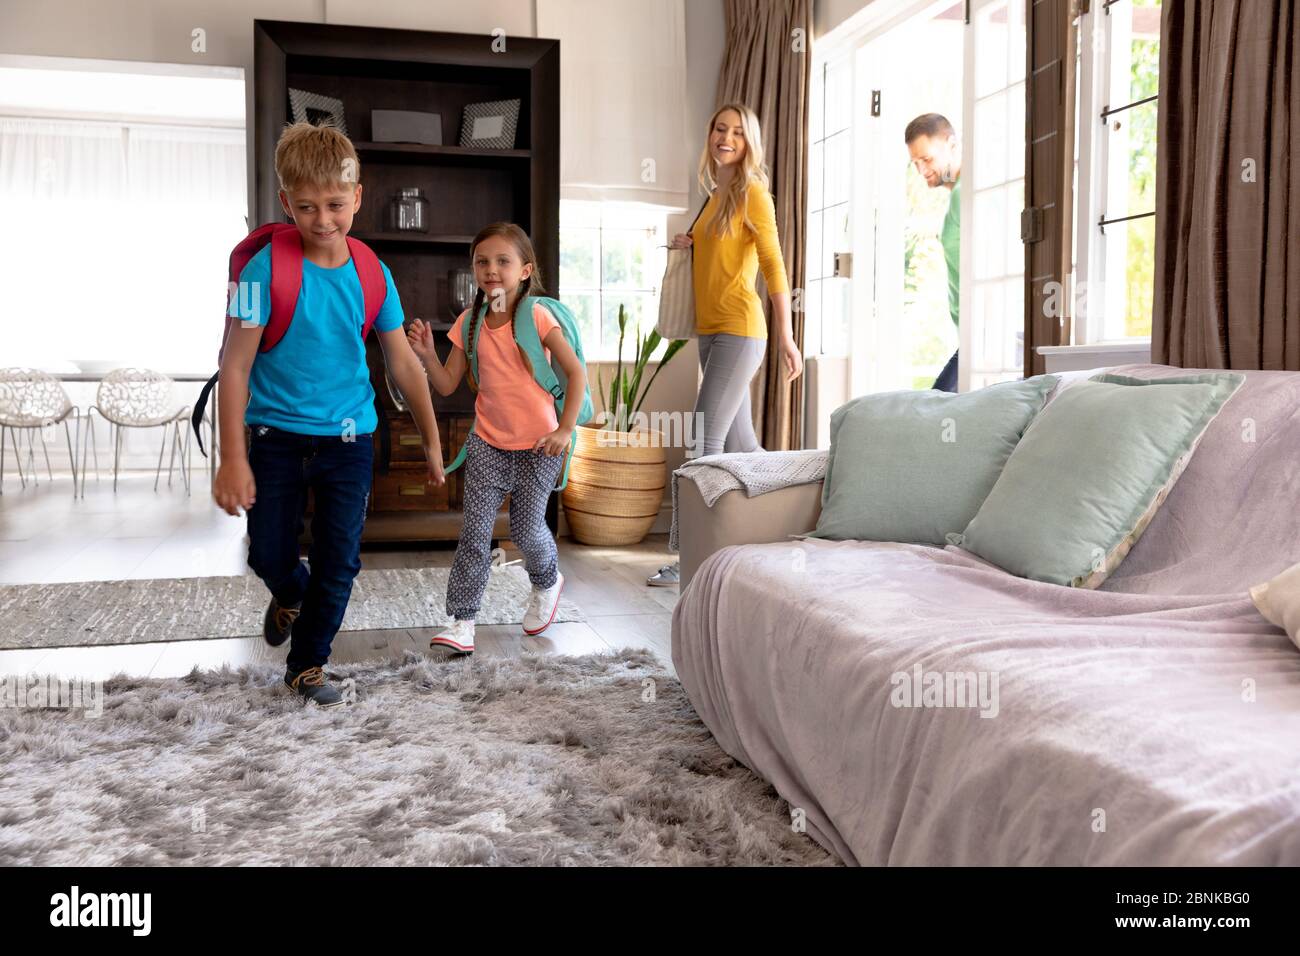 Familia caucásica con dos niños entrando en su casa regresando de la escuela Foto de stock